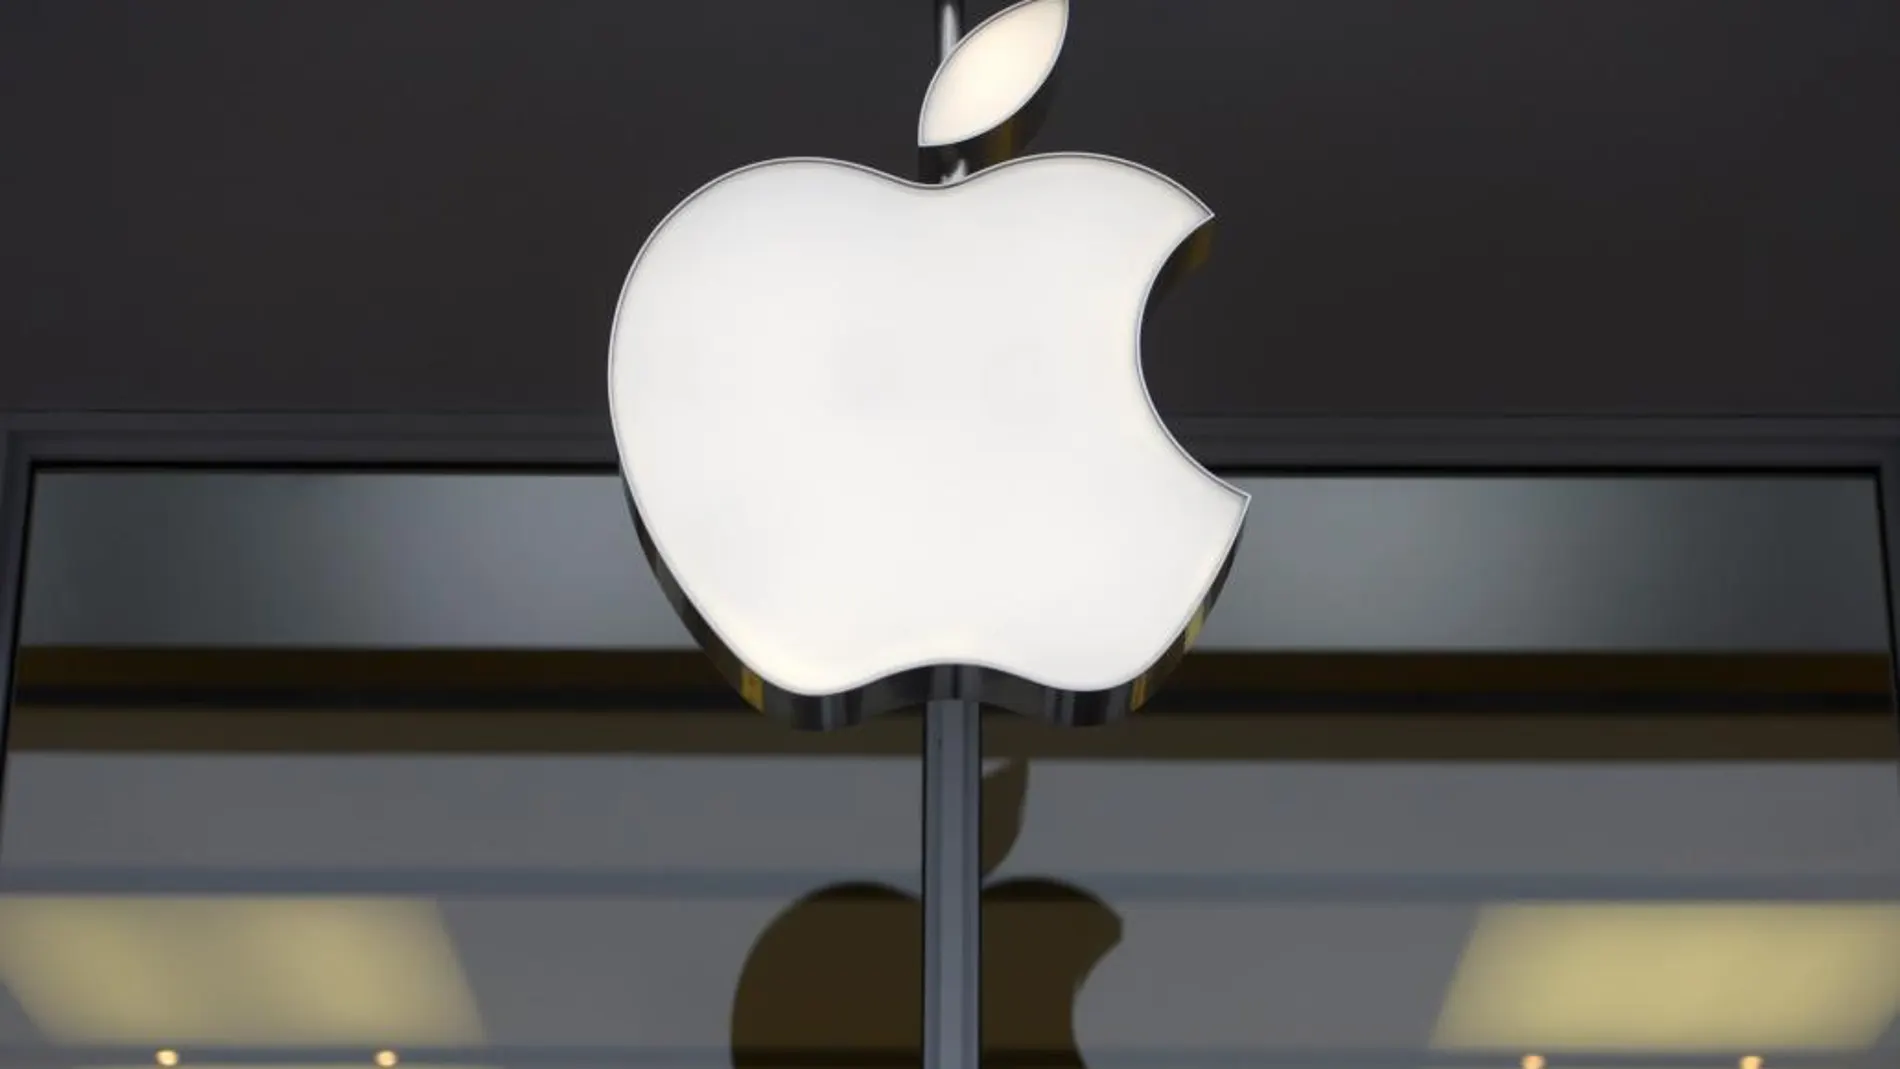 Apple sigue siendo la marca más valiosa del mundo, según el último ranking